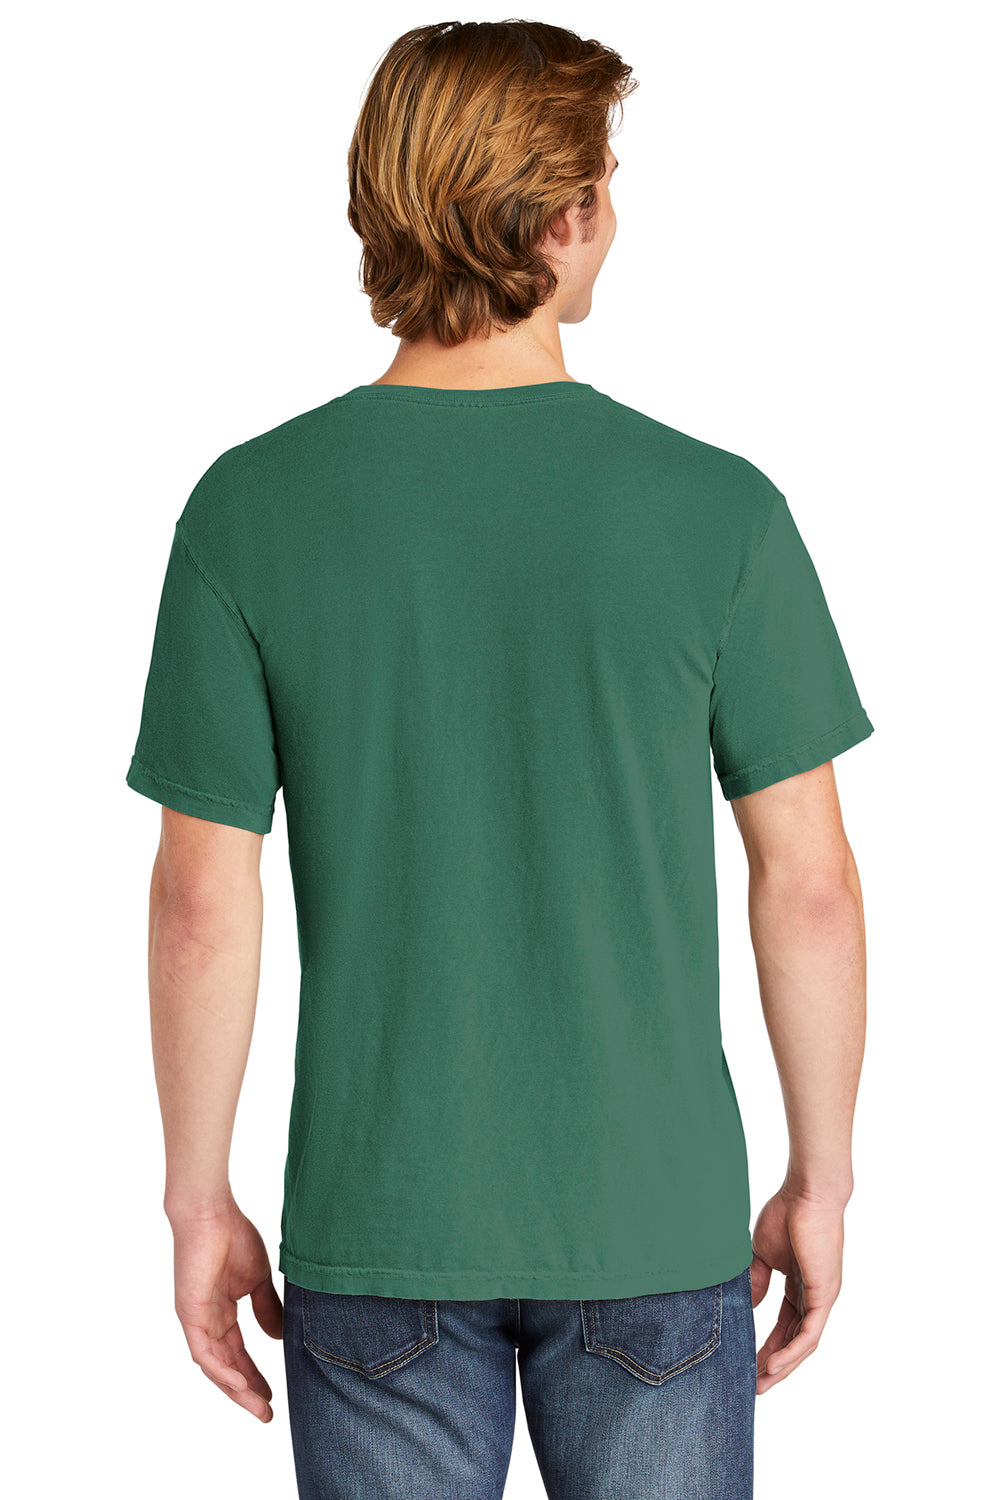 Comfort Colors 6030/6030CC Mens Short Sleeve Crewneck T-Shirt w/ Pocket Light Green Back